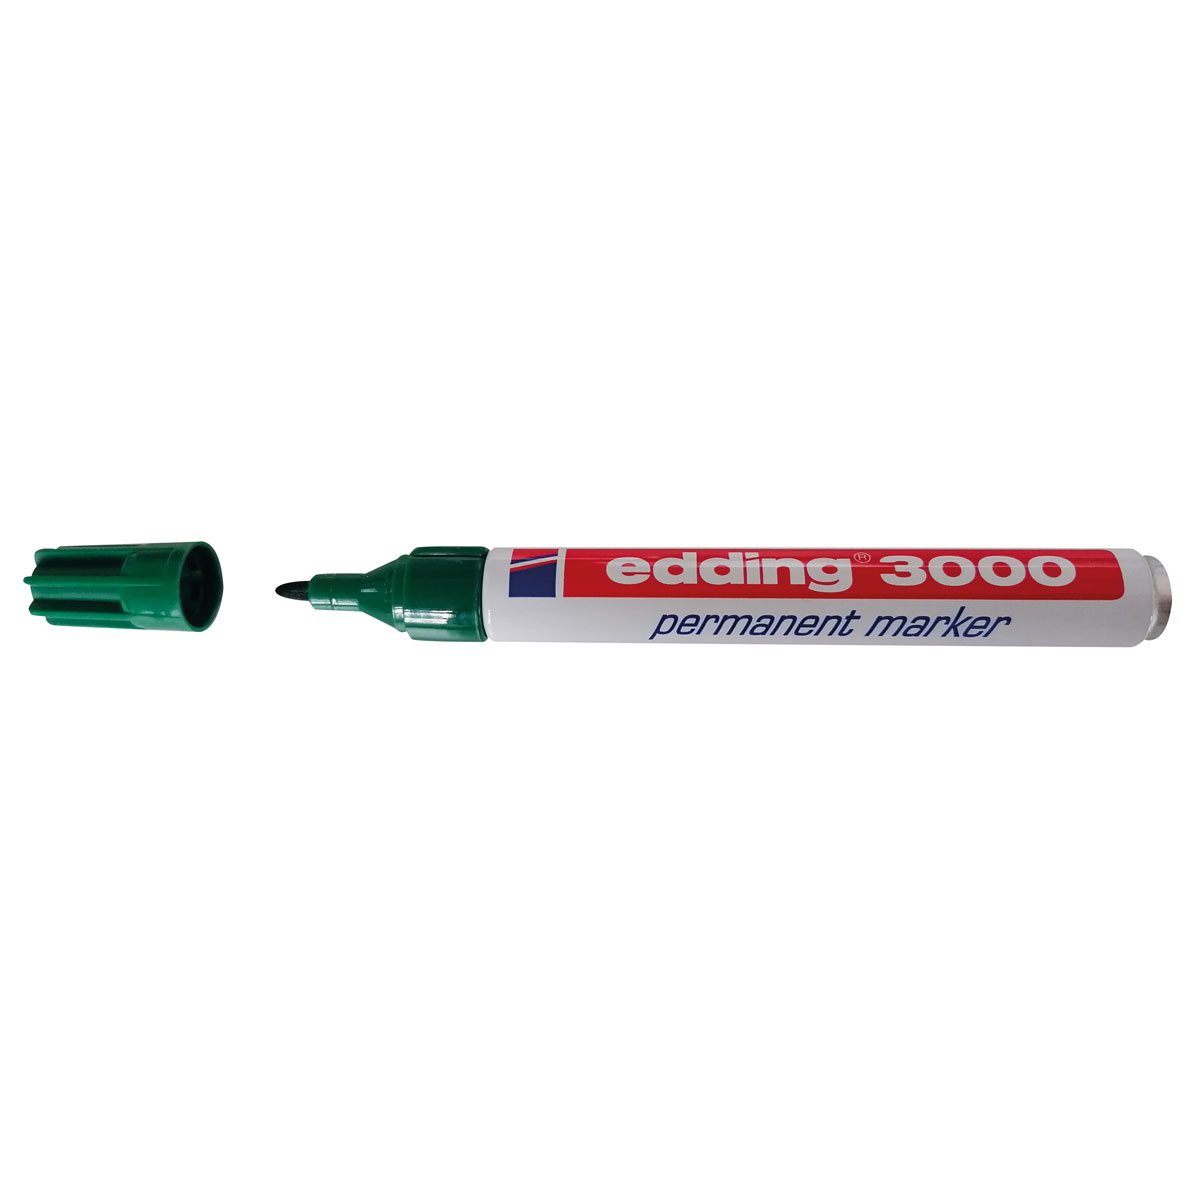 Permanentmarker Edding 3000, grün Rundspitze 1,5 - 3 mm, Aluminiumgehäuse